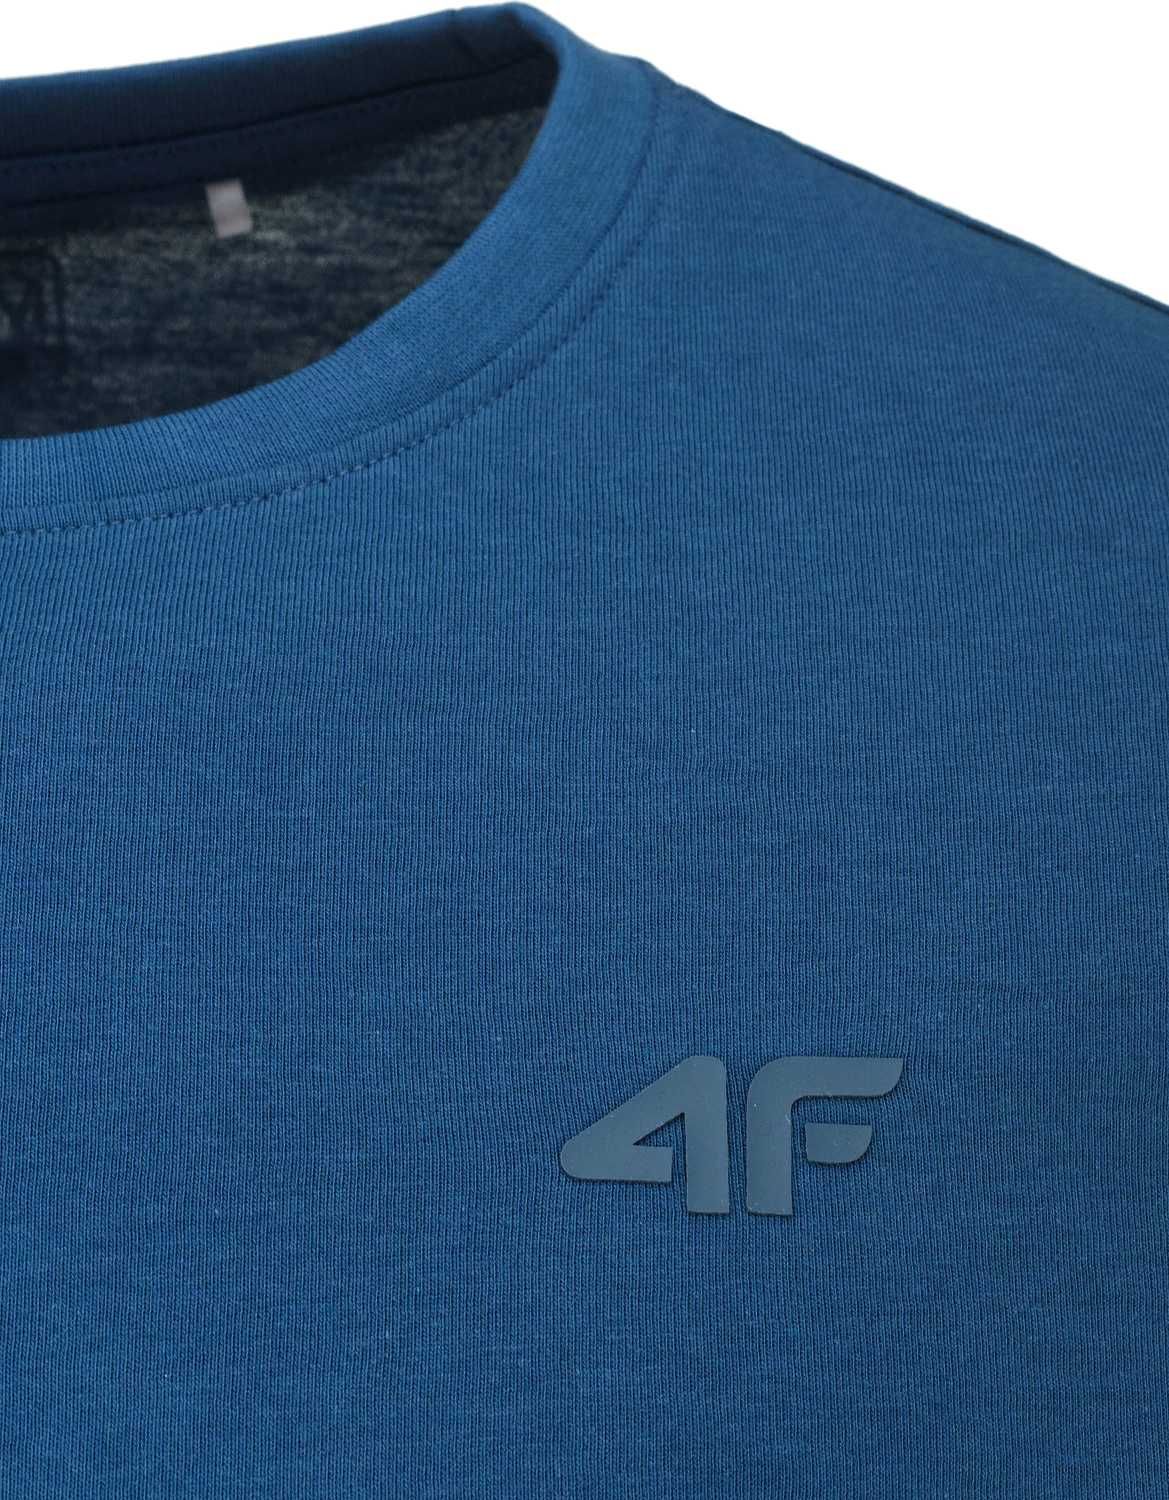 Koszulka 4F t-shirt męski 4FSS23TTSHM536 - L bawełna 100%